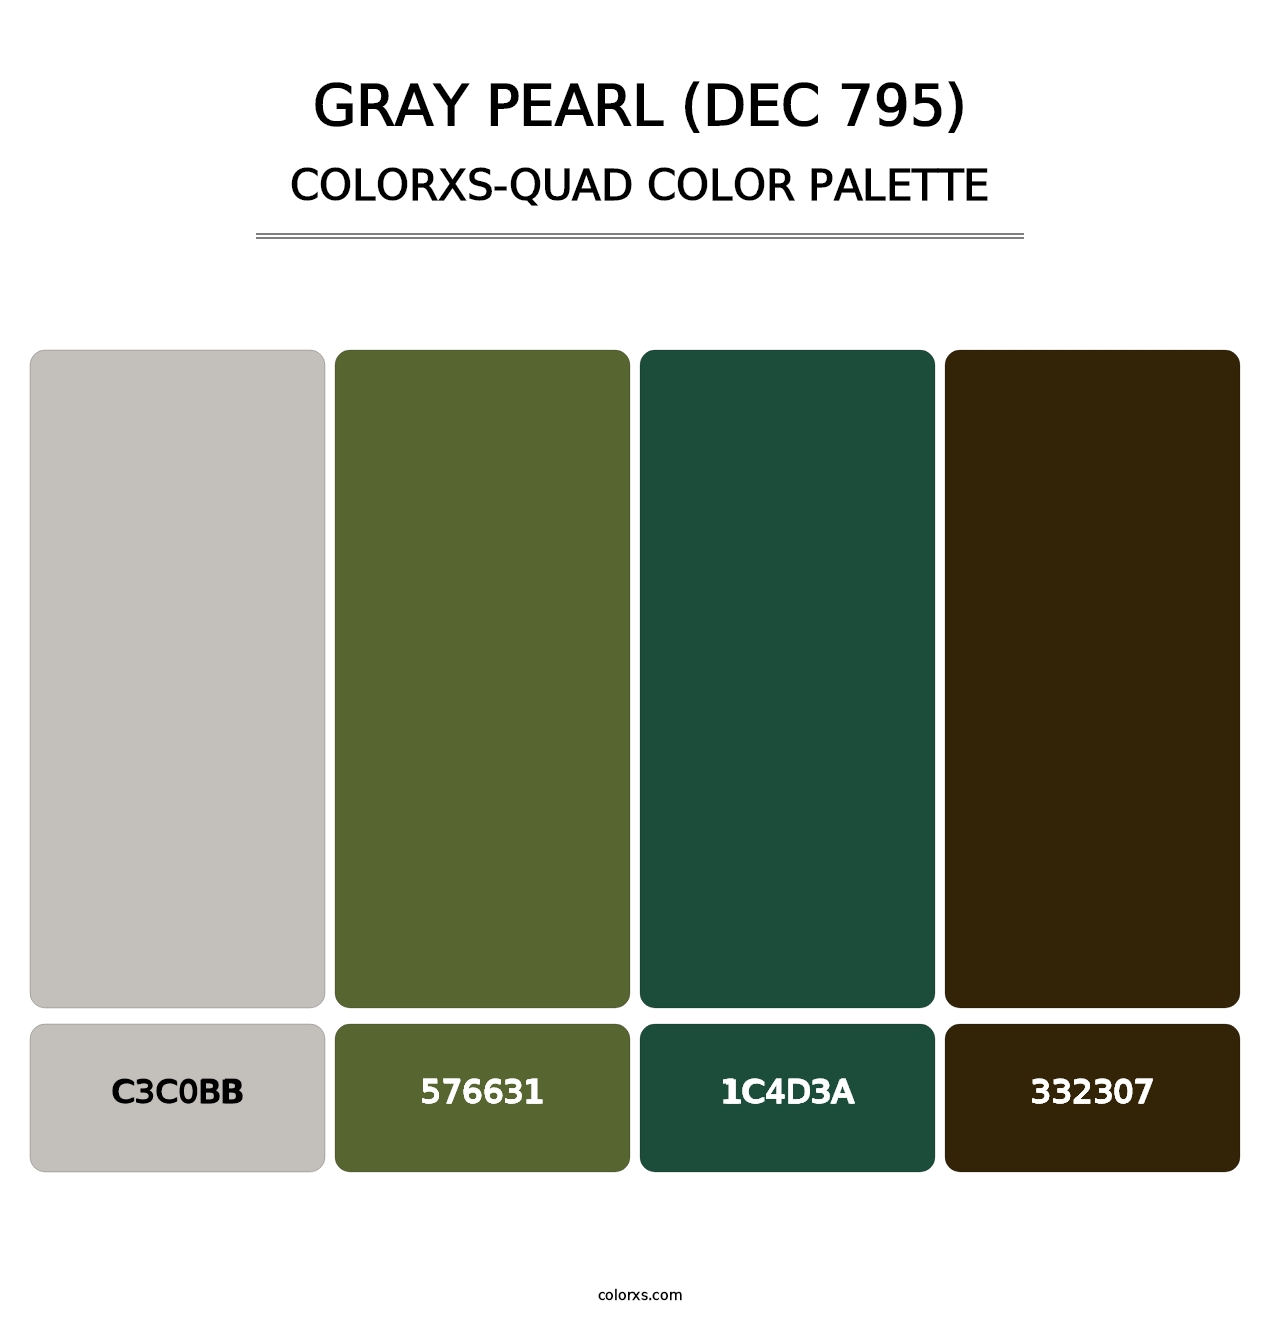 Gray Pearl (DEC 795) - Colorxs Quad Palette